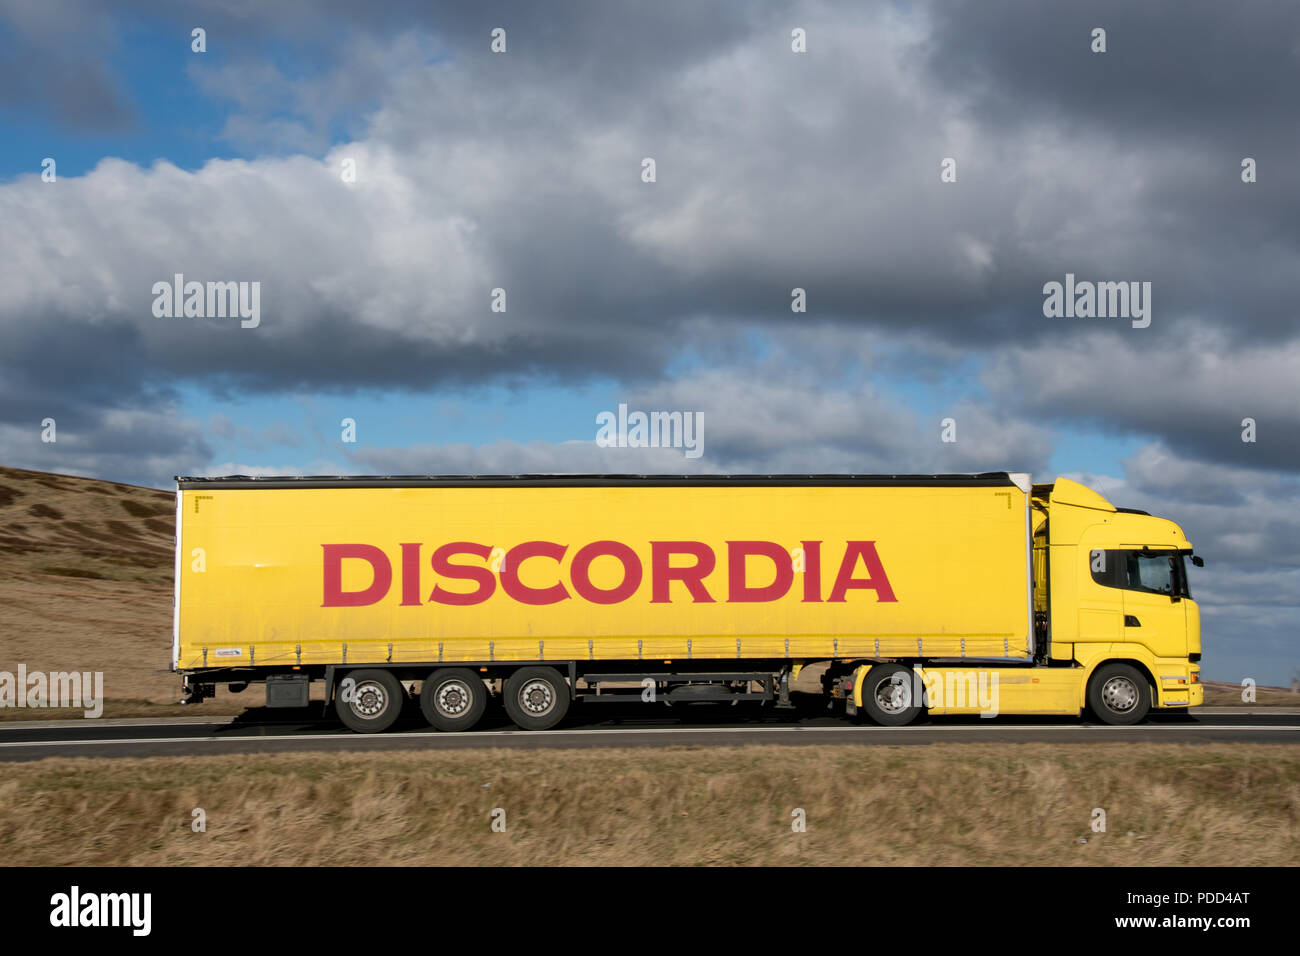 Camión Scania del grupo logístico búlgaro Discordia en la conducción Woodhead Pass, Yorkshire, Reino Unido Foto de stock